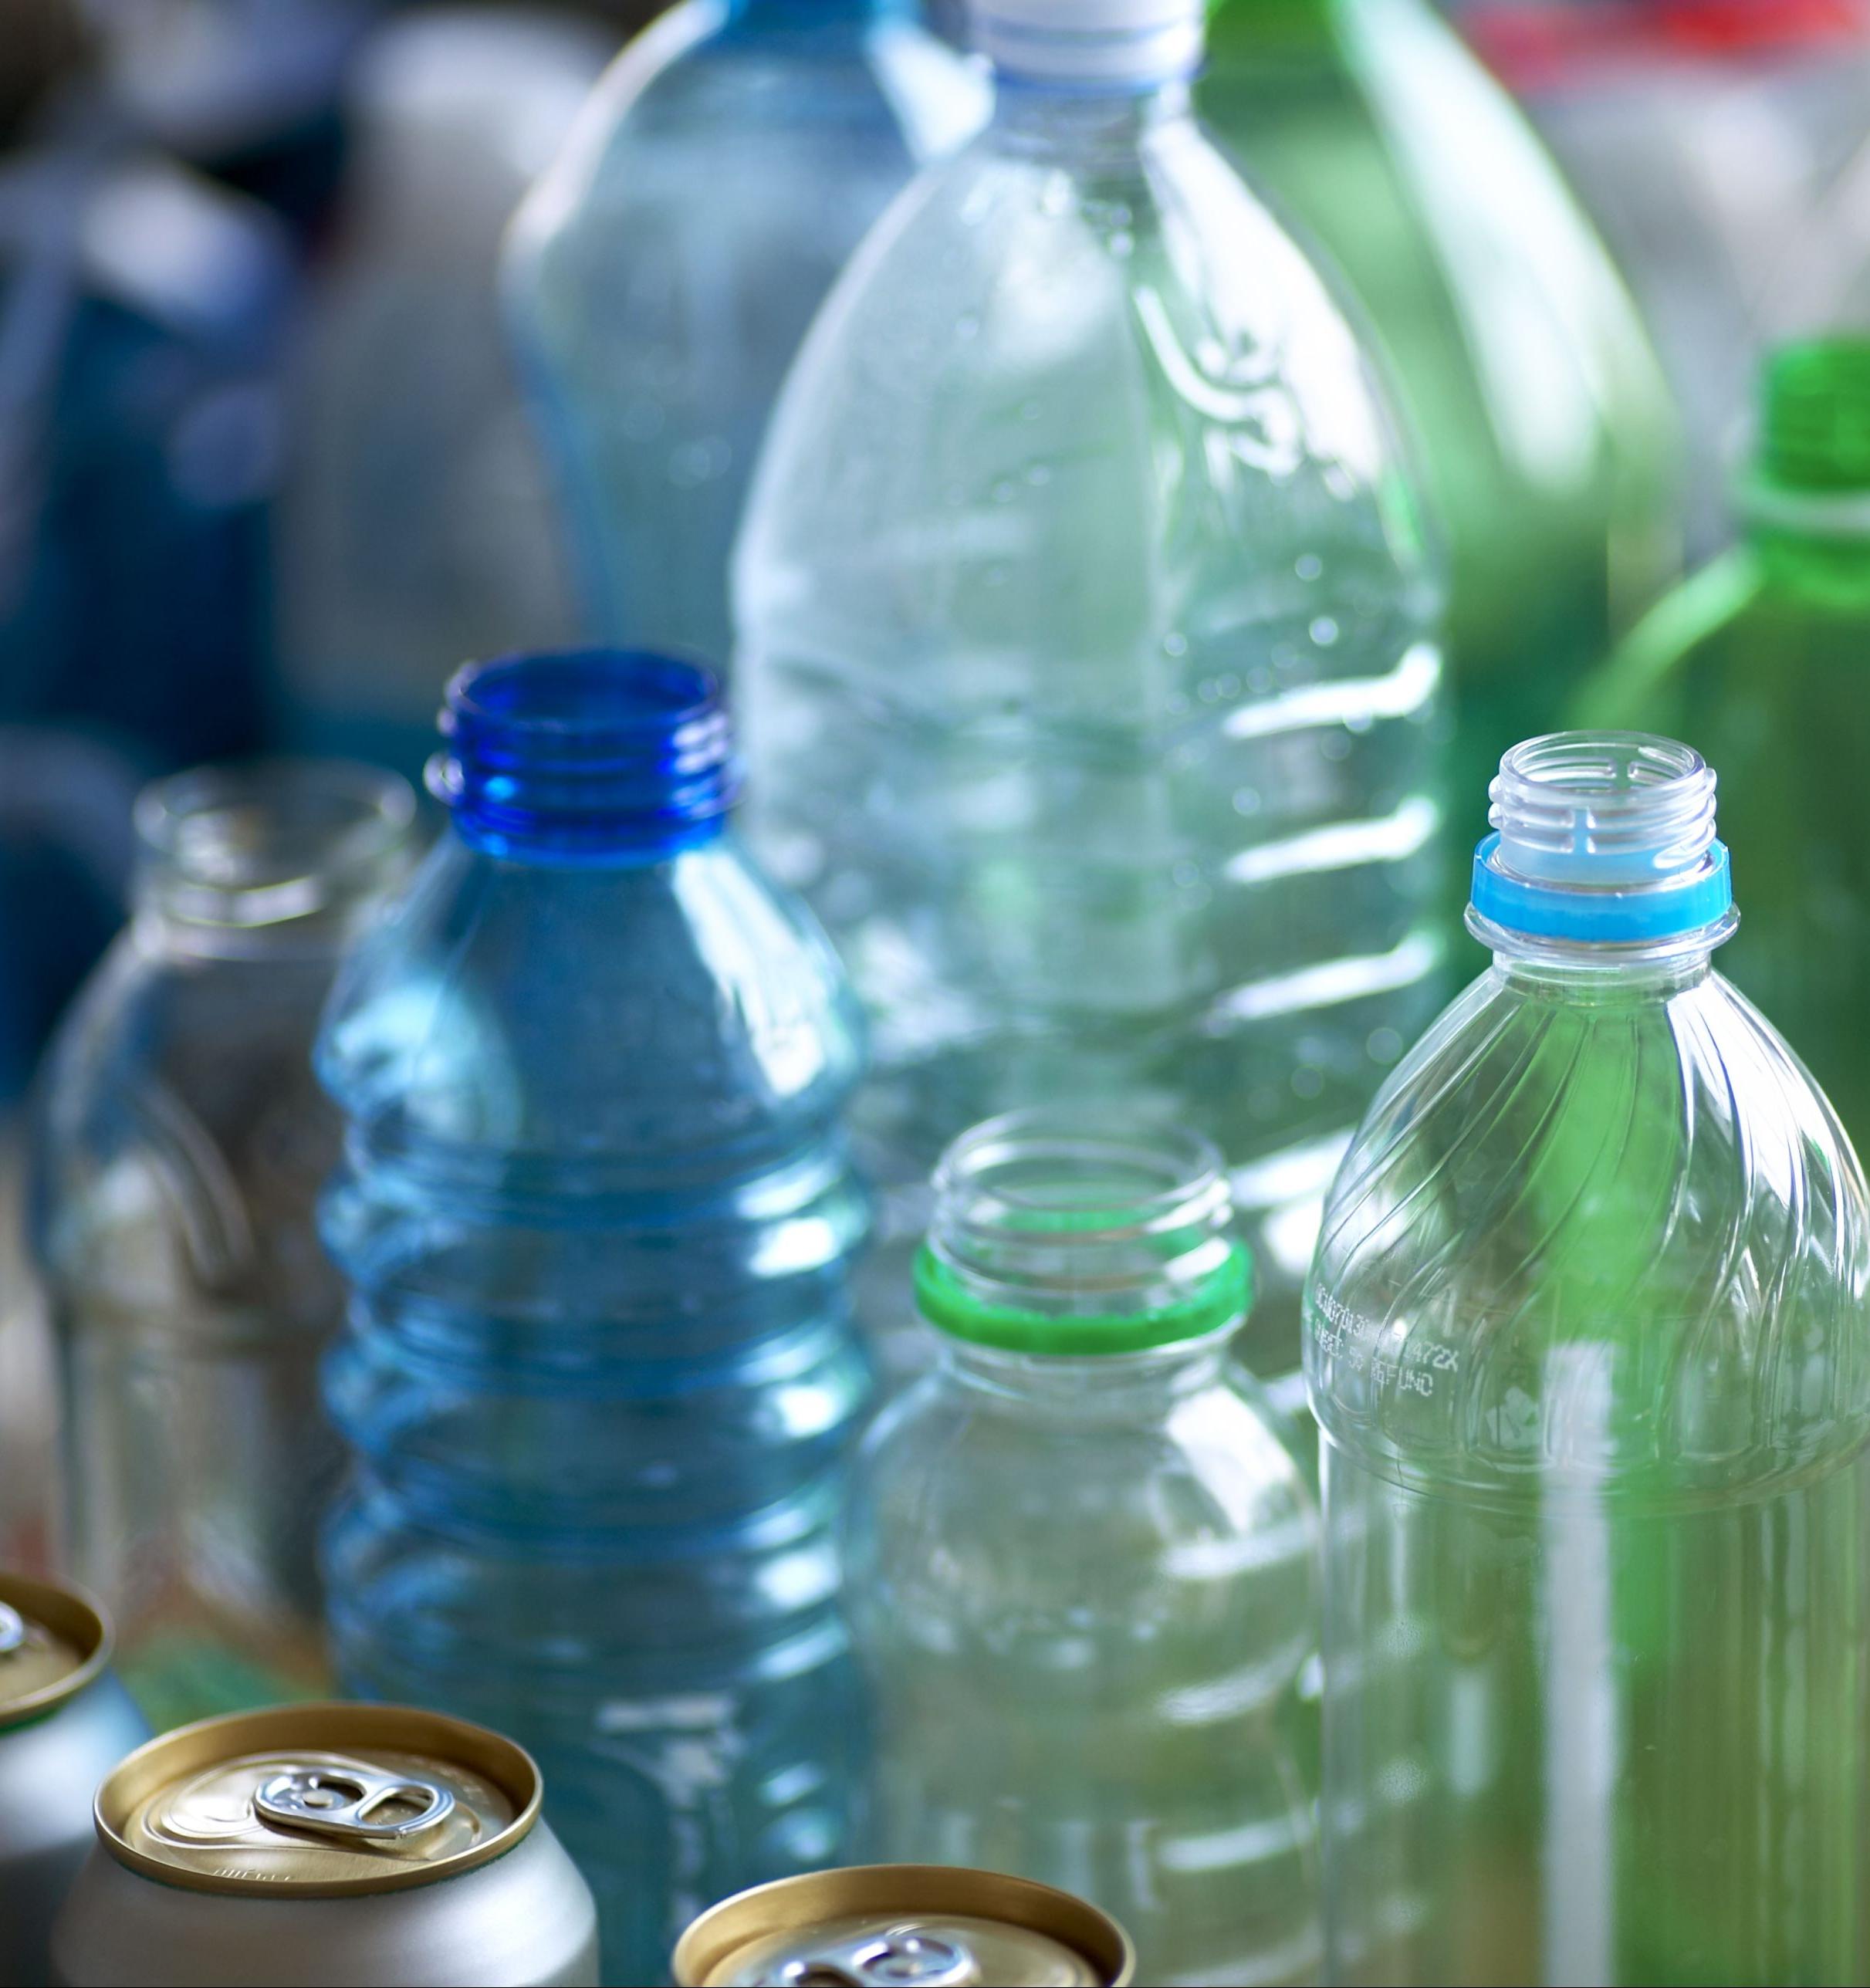 В Мосгордуме поддержали идею появления пунктов приема бутылок в супермаркетах